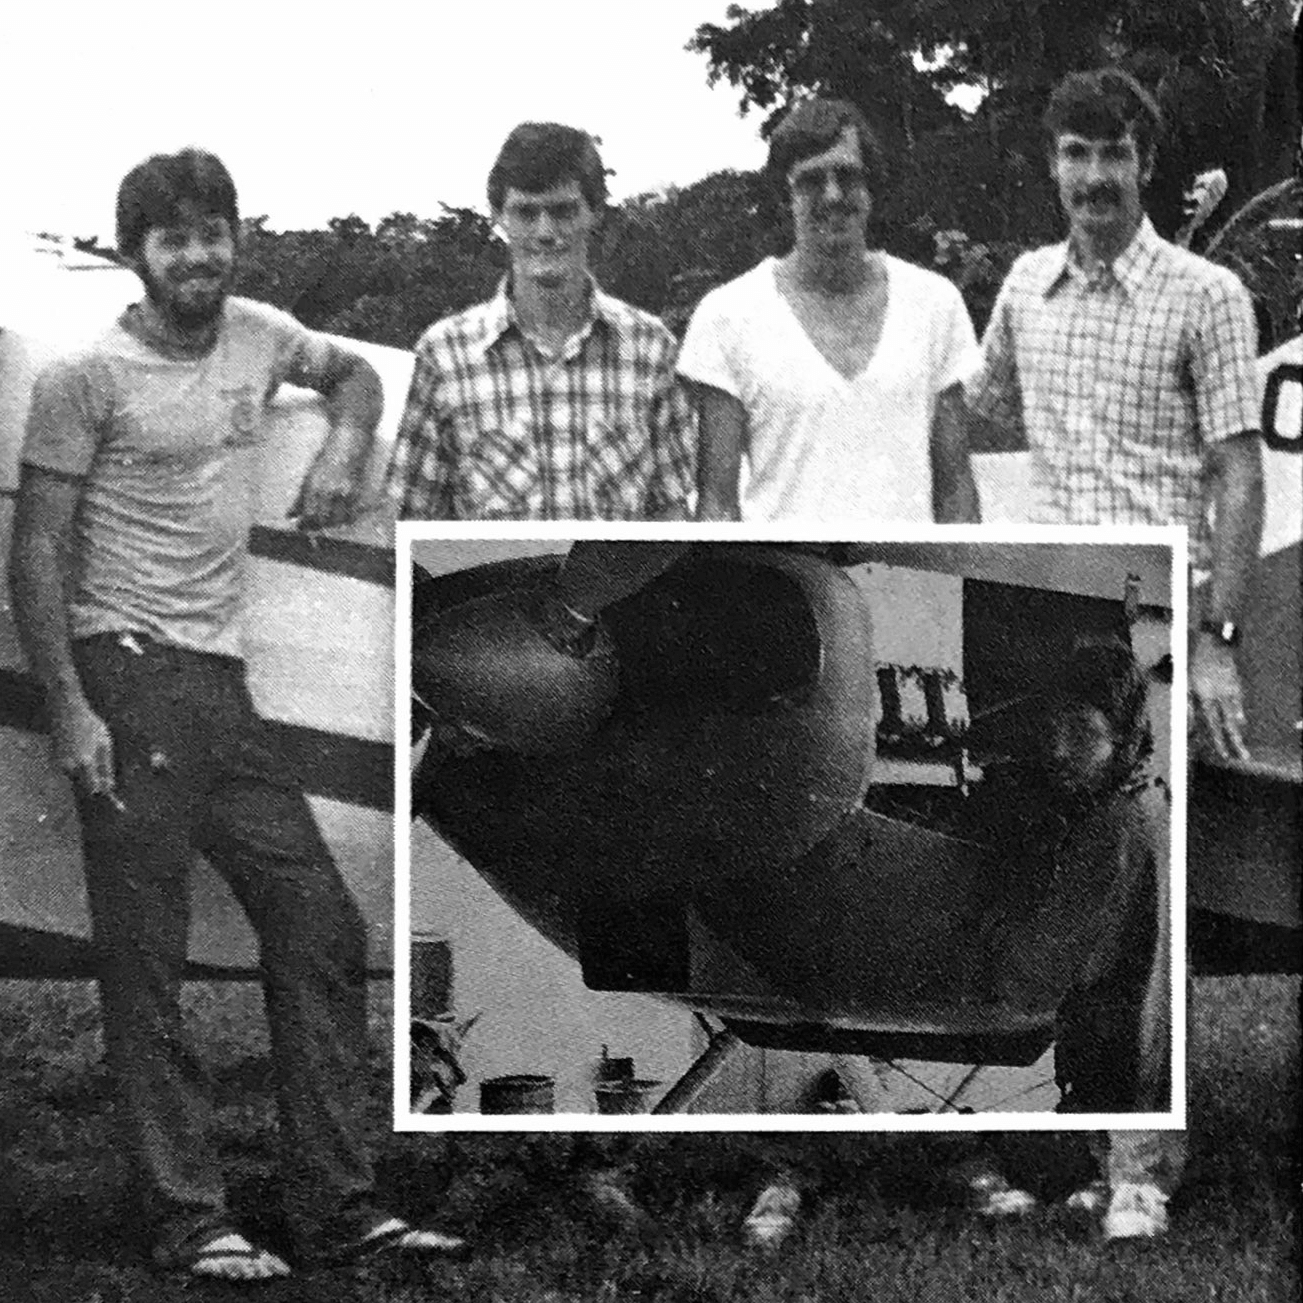 SAMAIR Bolivia 1972 Mark Friesen, Tim Bohl, Dave Simmons, Joe Kemper